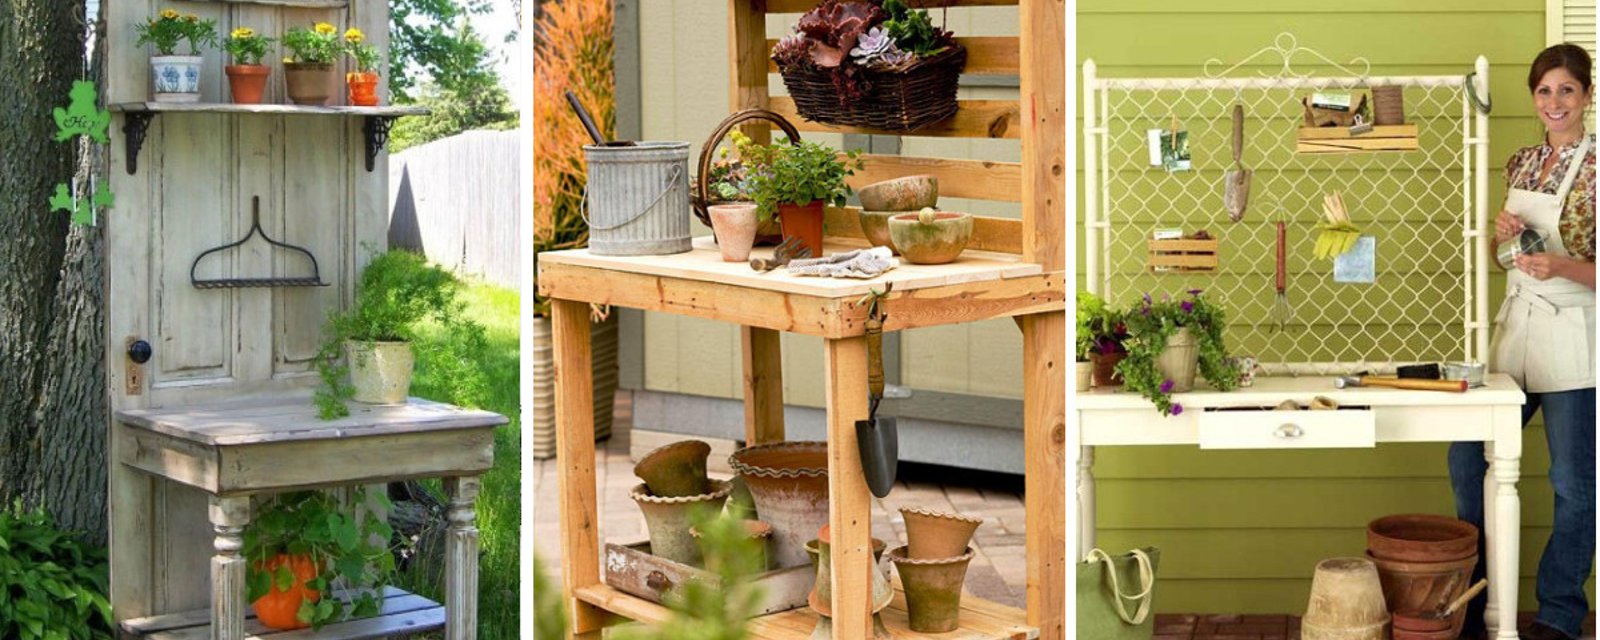 15 magnifiques idées pour fabriquer un atelier de jardinage avec des matériaux récupérés! 